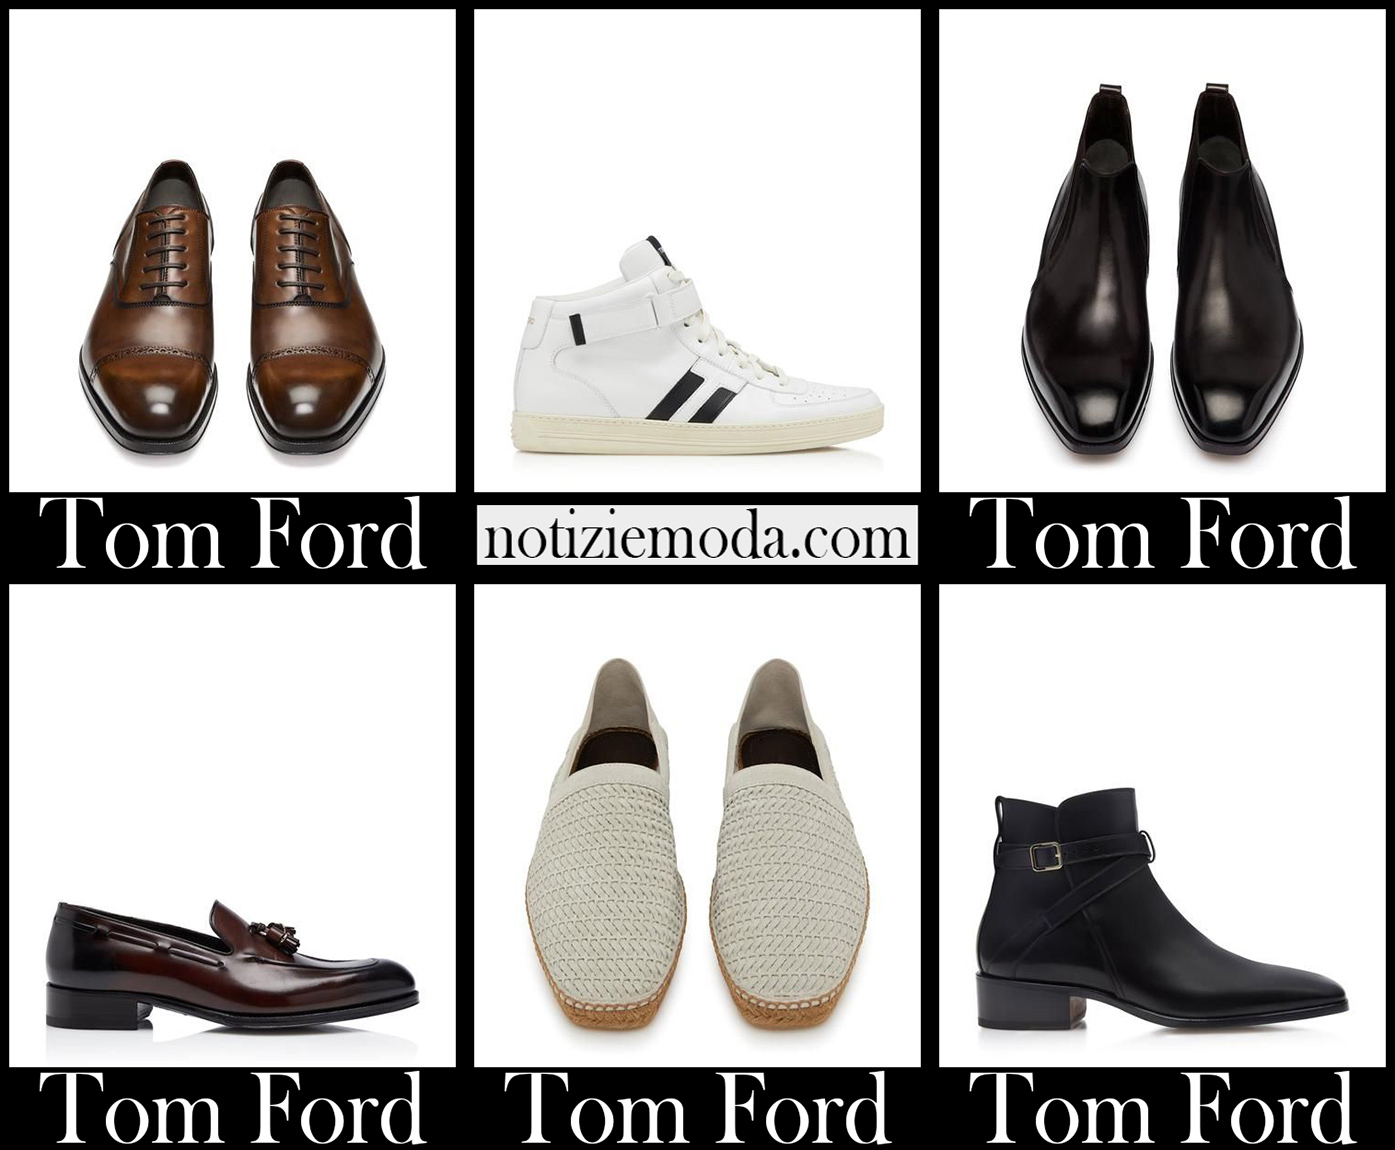 Nuovi arrivi scarpe Tom Ford 2021 calzature uomo